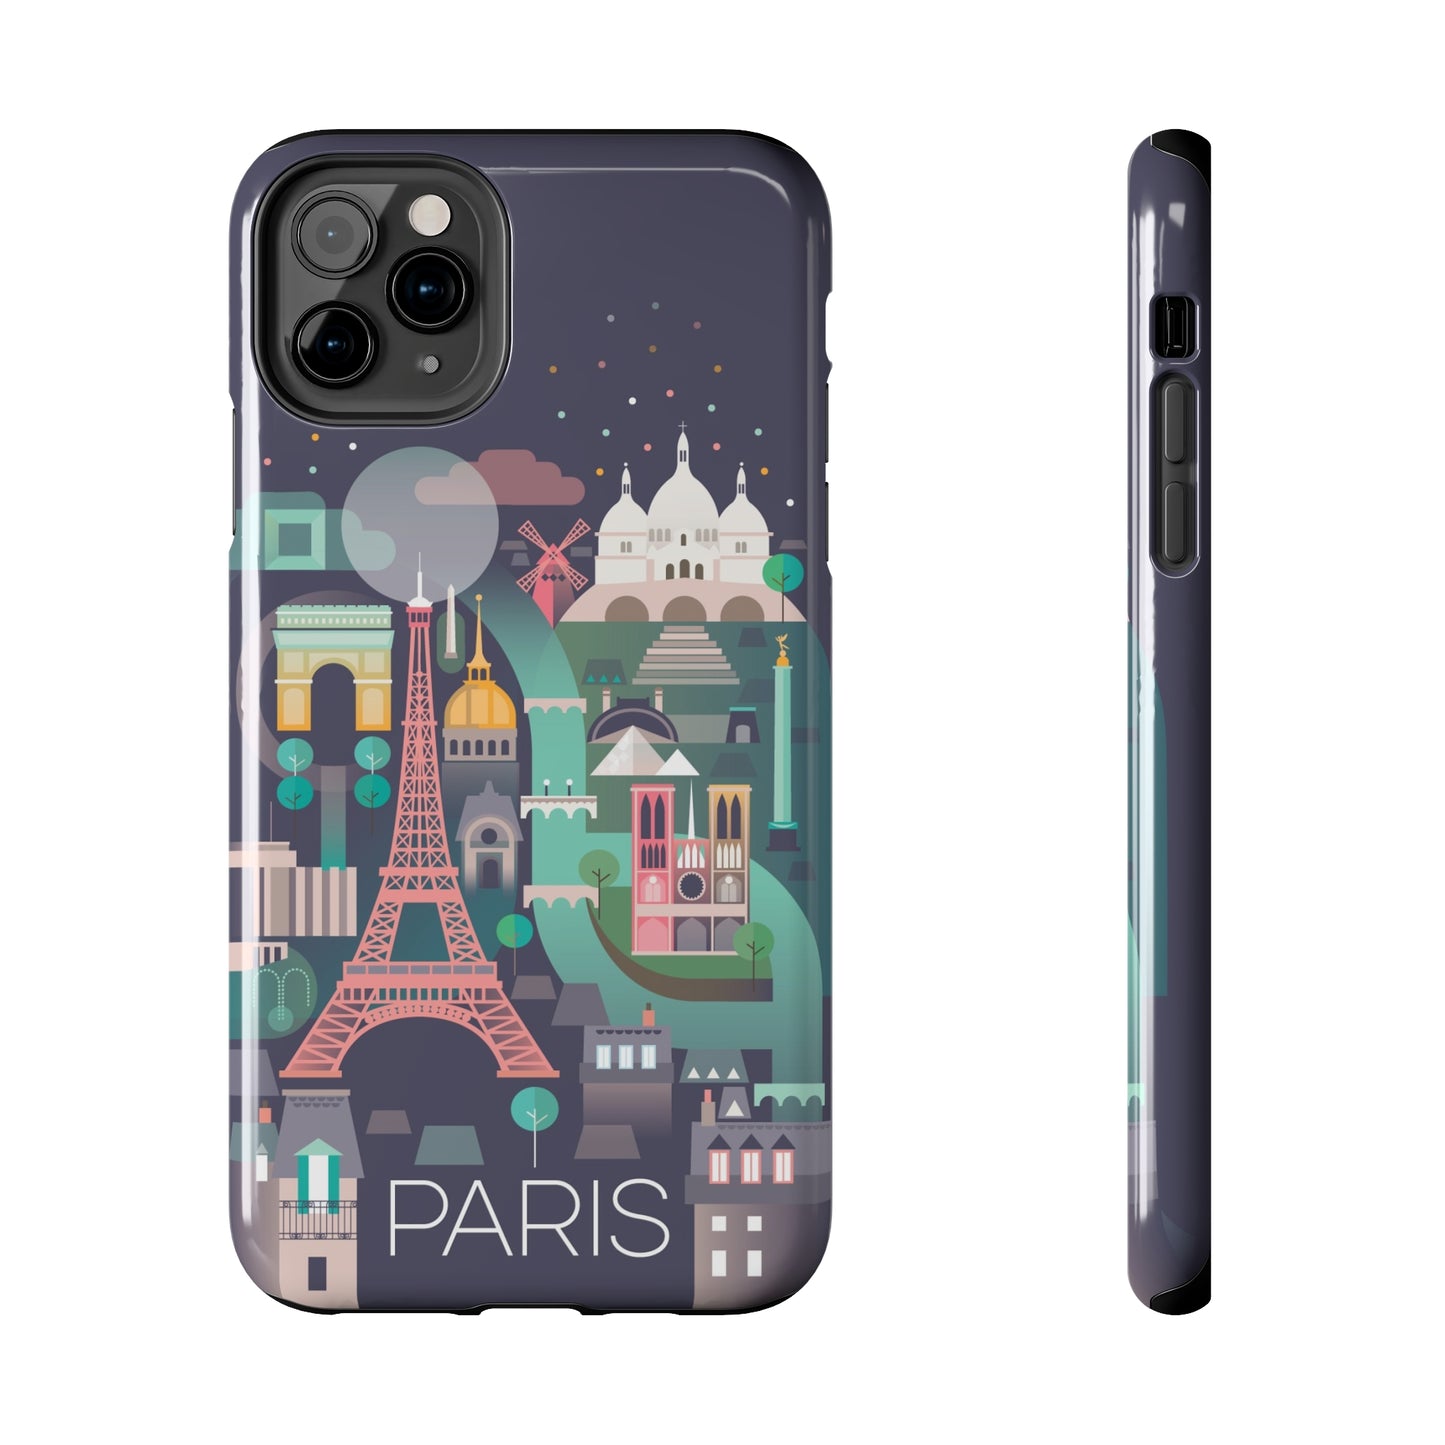 Paris Phone Cases